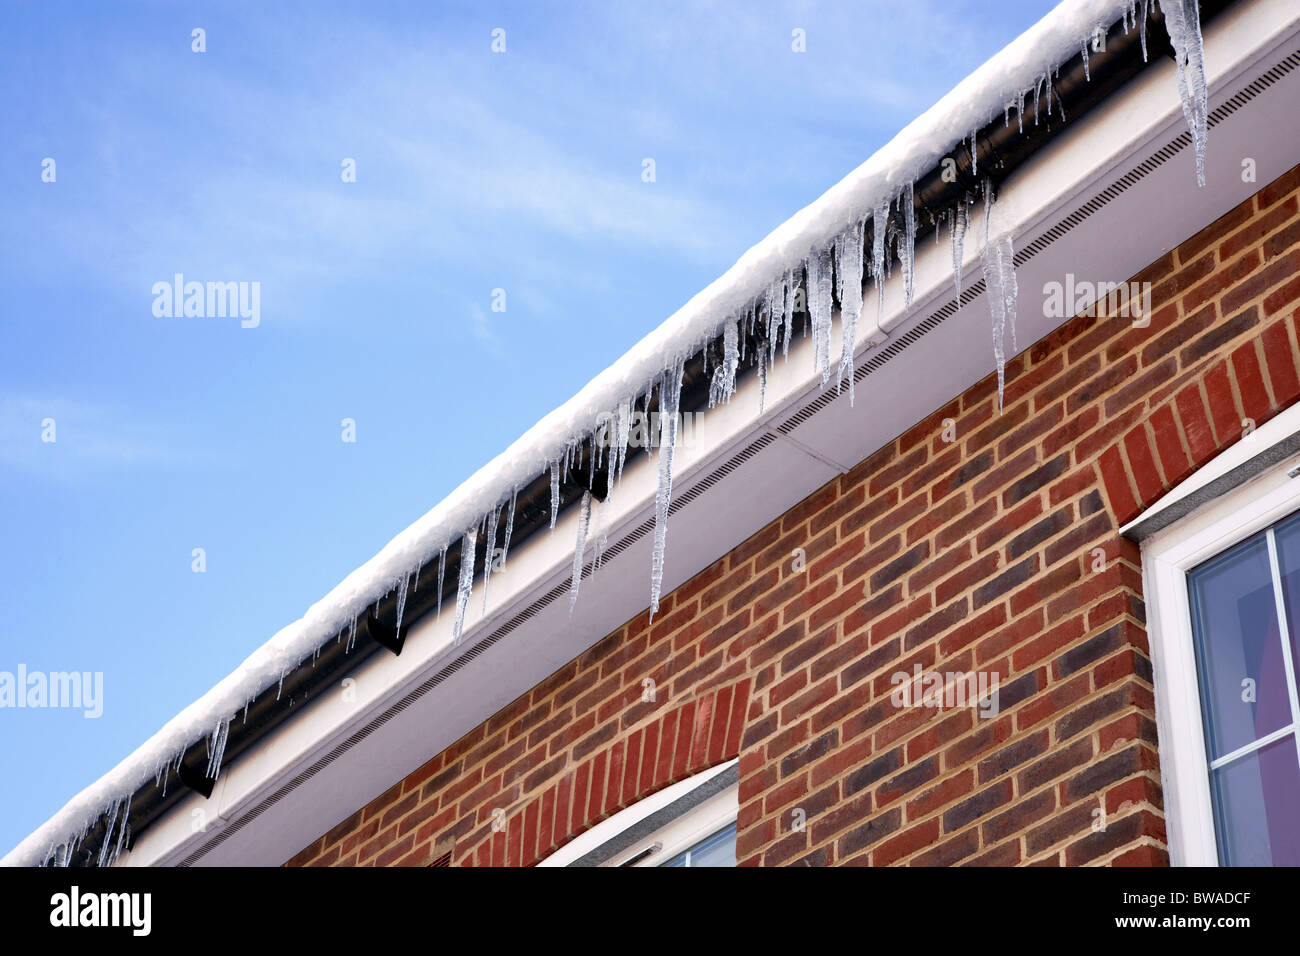 Image d'hiver de glaçons pendant de la gouttière sur le toit couvert de neige d'une maison moderne. Banque D'Images